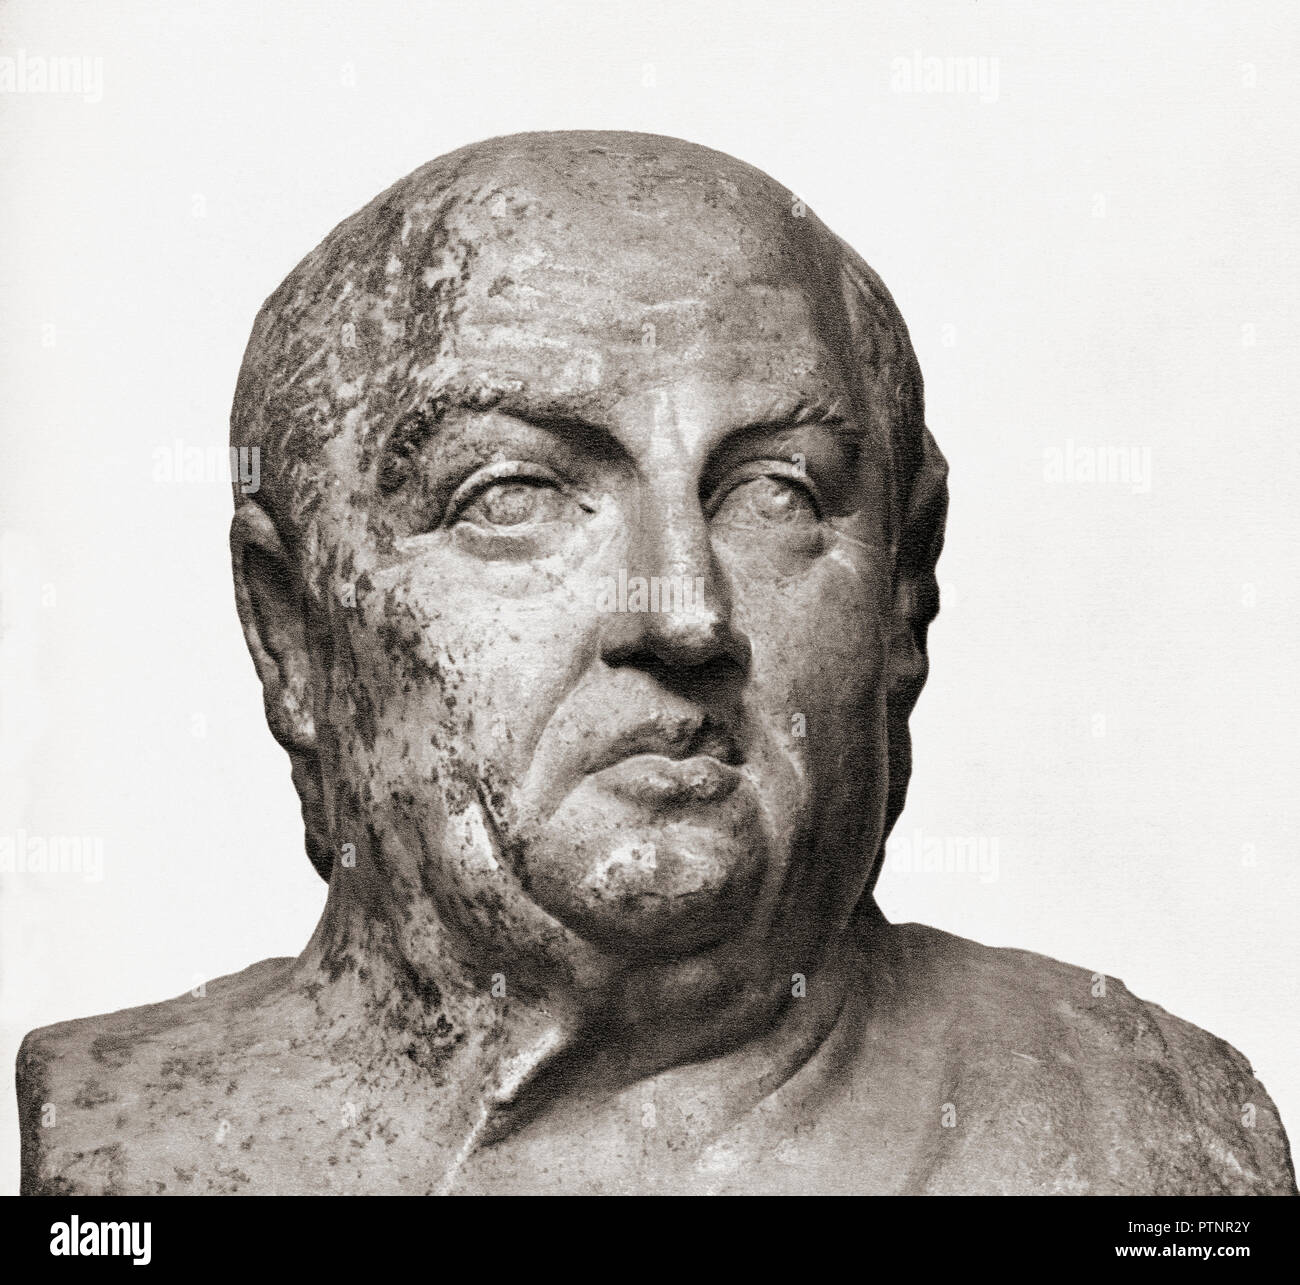 Büste von Seneca dem Jüngeren, aka Seneca, C. 4 BC-AD 65. Römische stoischer Philosoph, Staatsmann, Dramatiker. Stockfoto